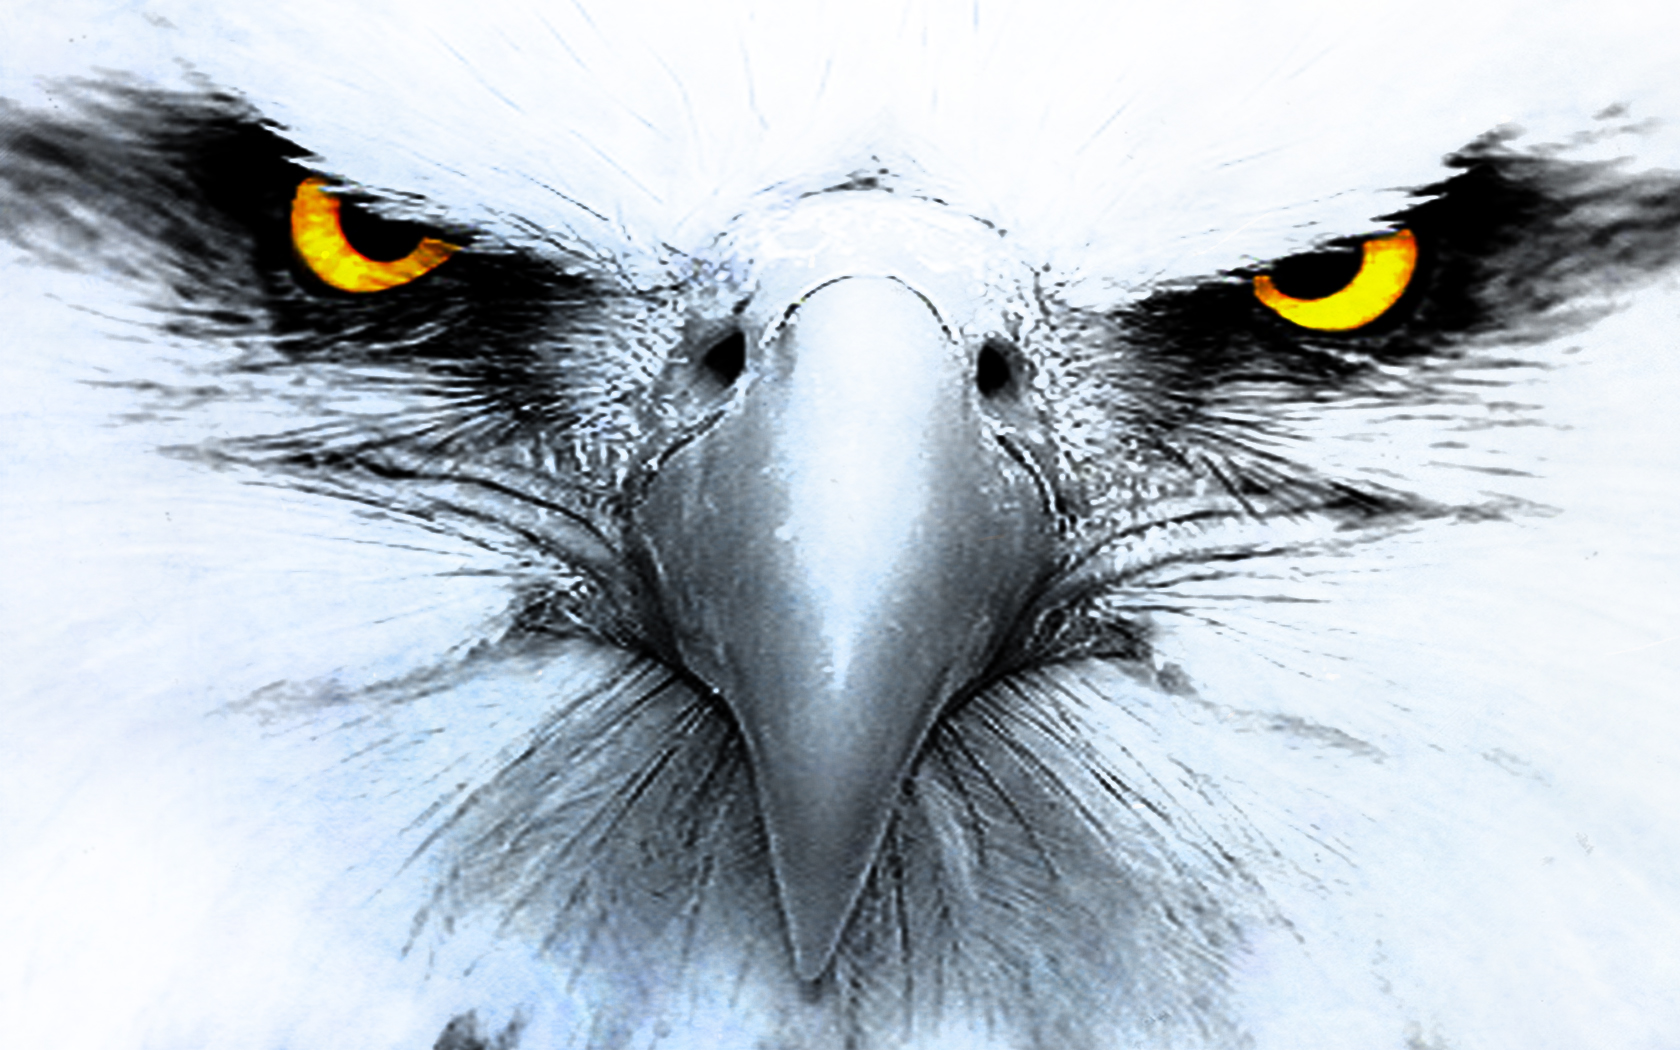 FunMozar – Wallpapers of Eagles